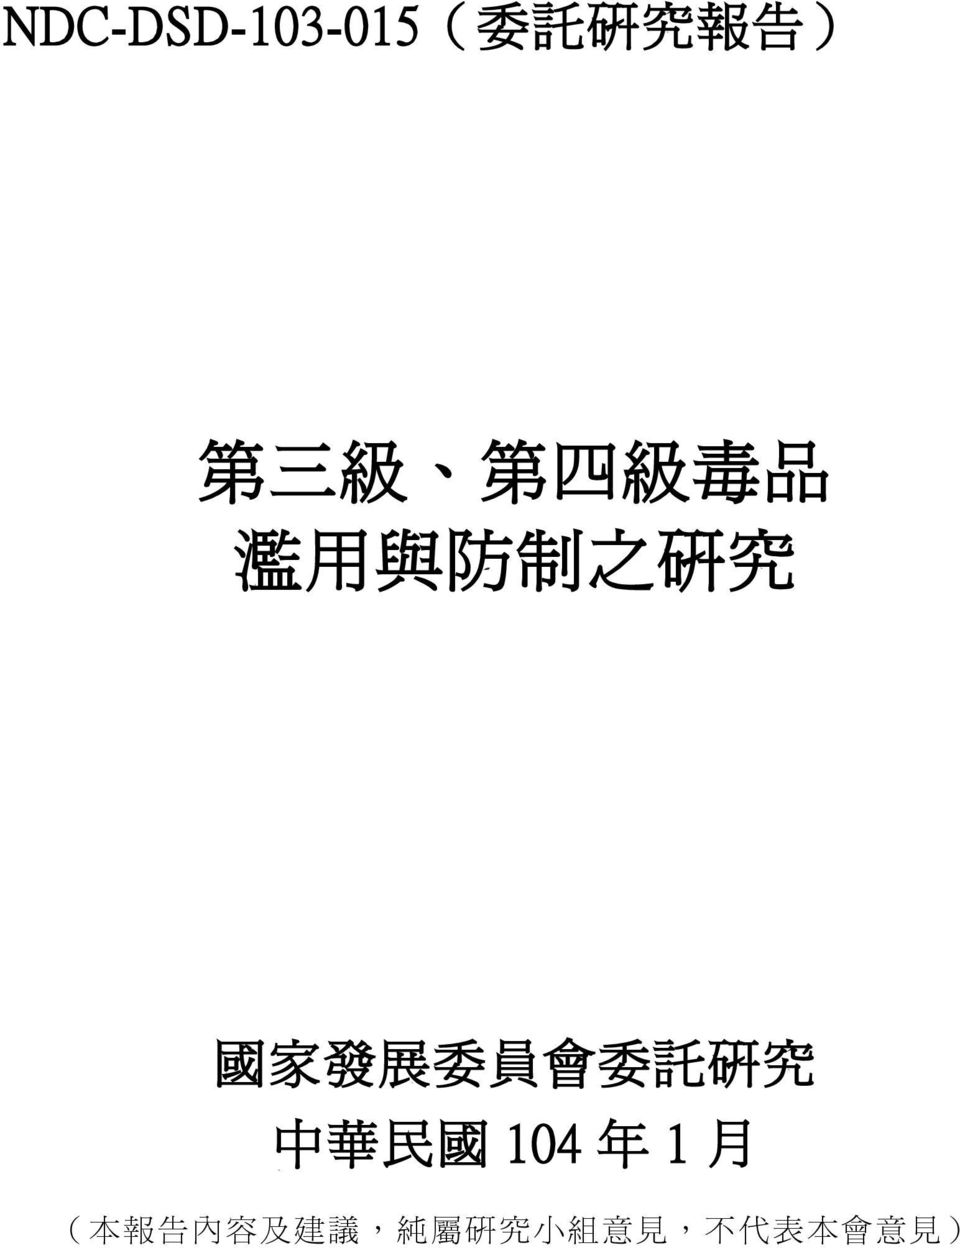 委 託 研 究 中 華 民 國 104 年 1 月 ( 本 報 告 內 容